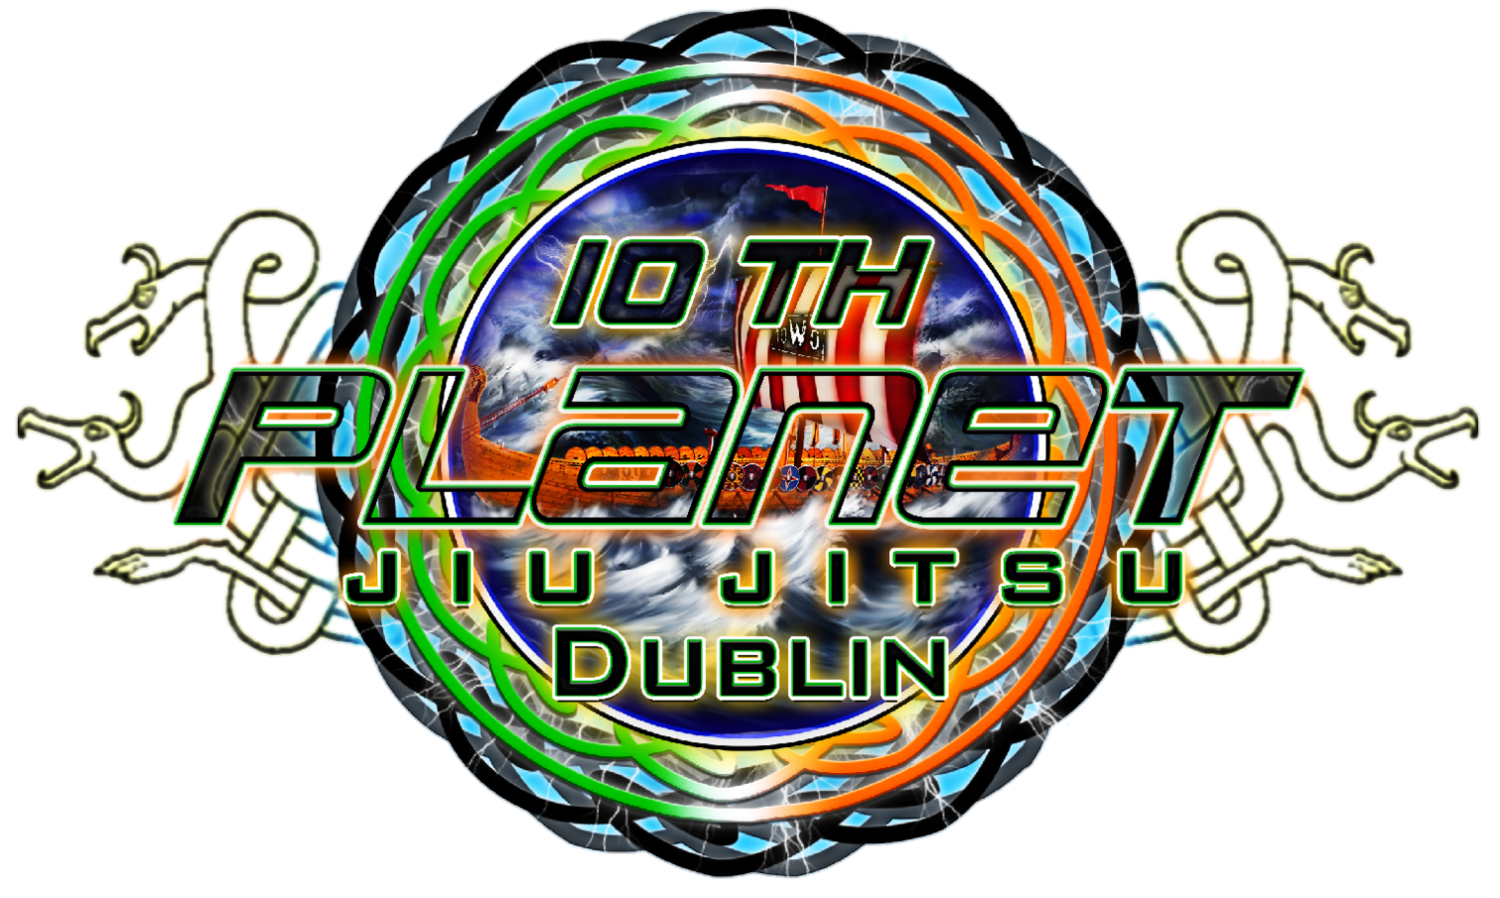 10th Planet Jiu Jitsu Dublin - Brazilian Jiu Jitsu, Wrestling, Fitness